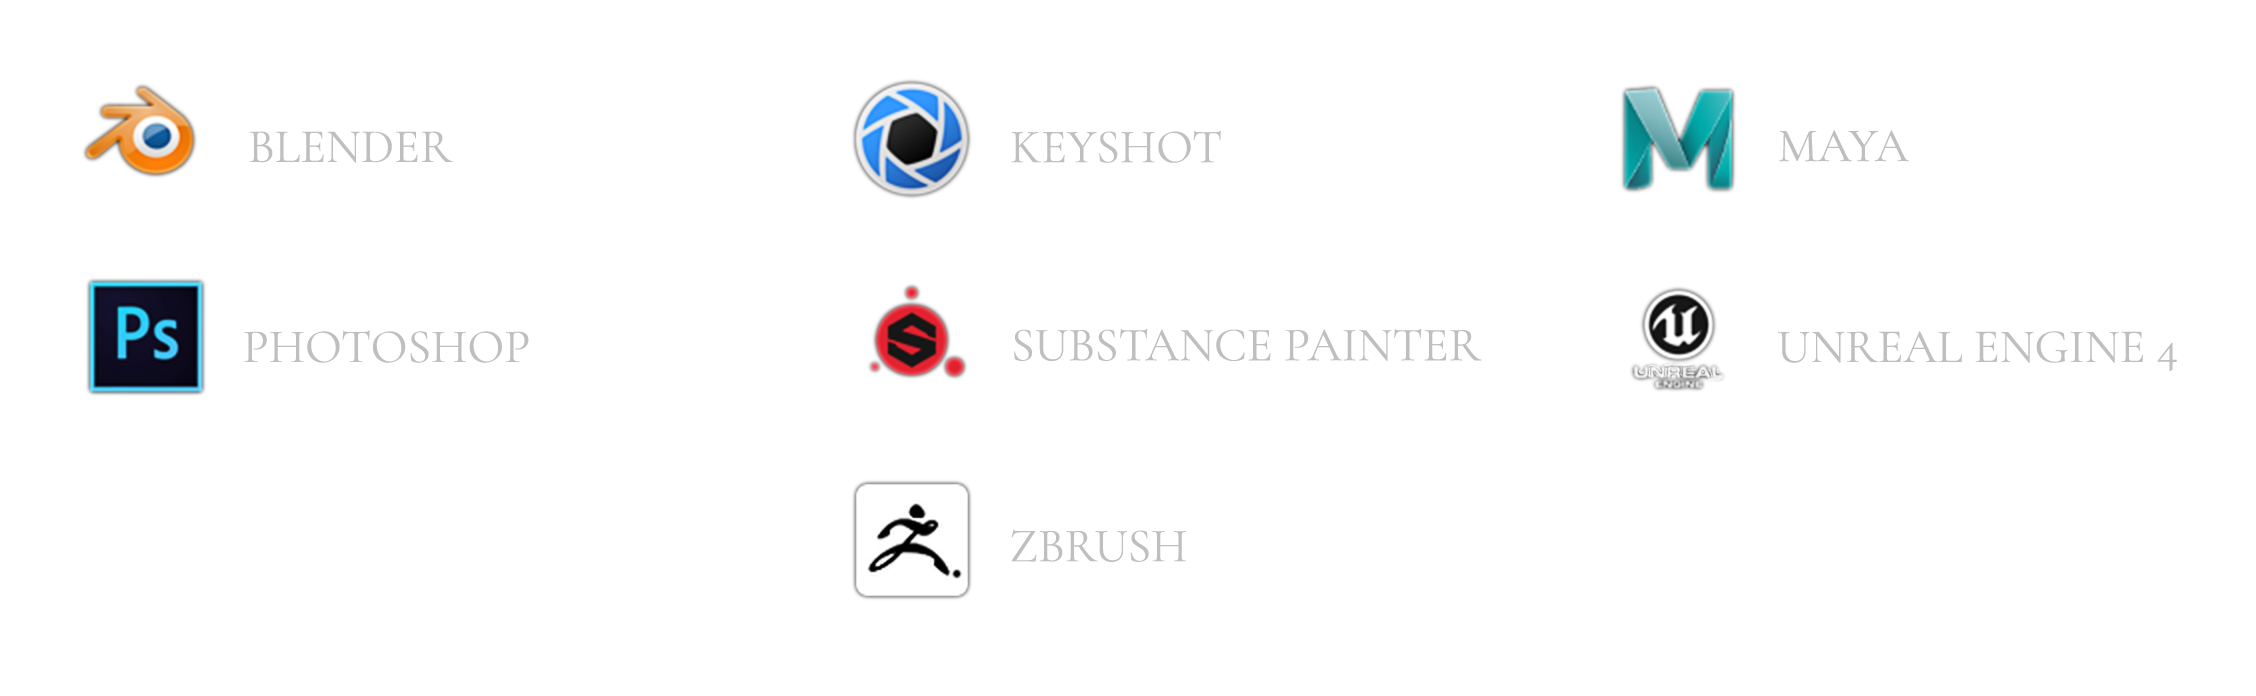 ZBrush, Substance Painter, Blender, Maya, Unreal Engine 4, Keyshot, Photoshop